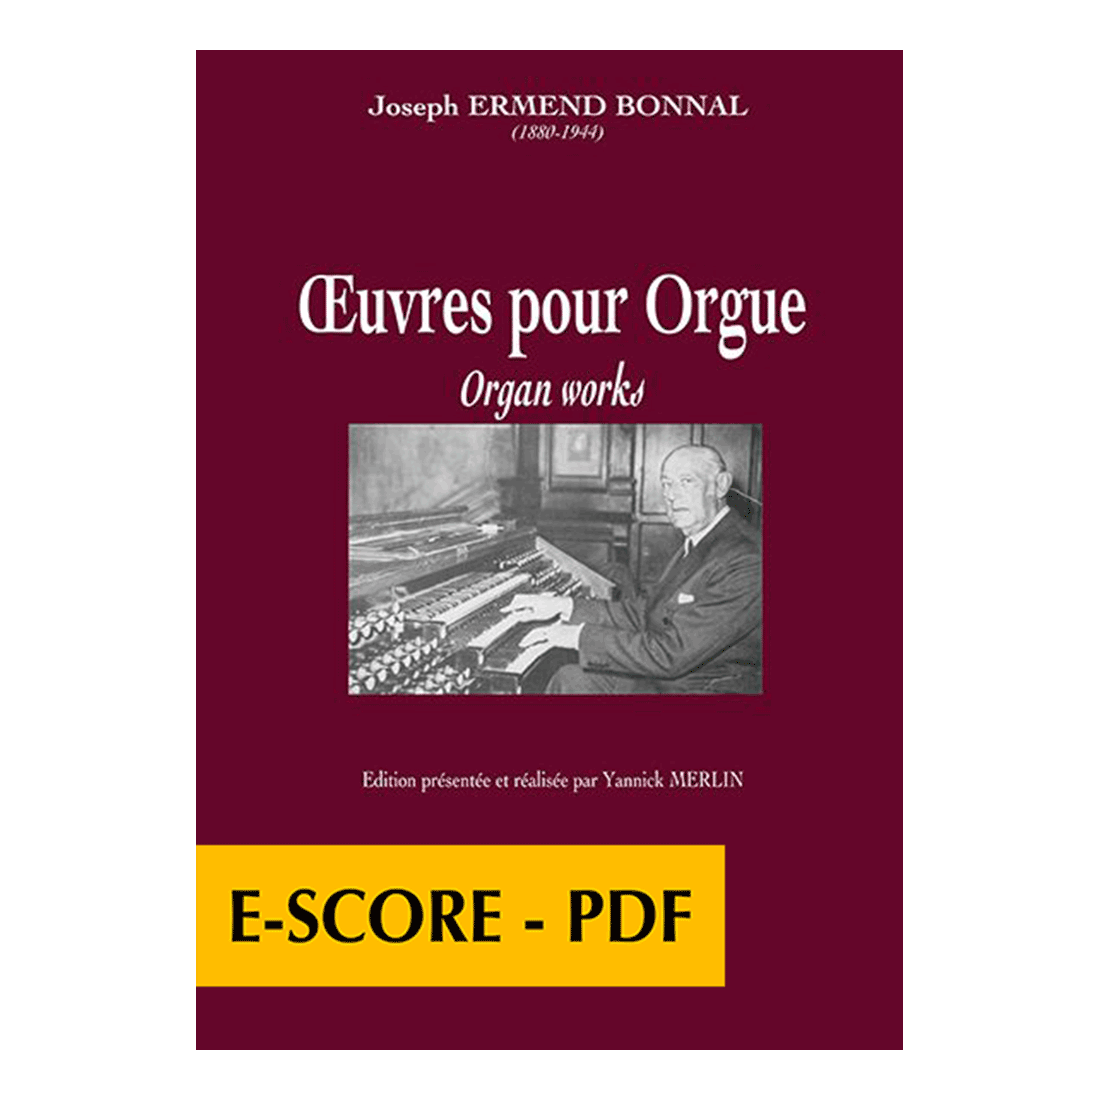 Unveröffentlichte Werke für Orgel - E-score PDF